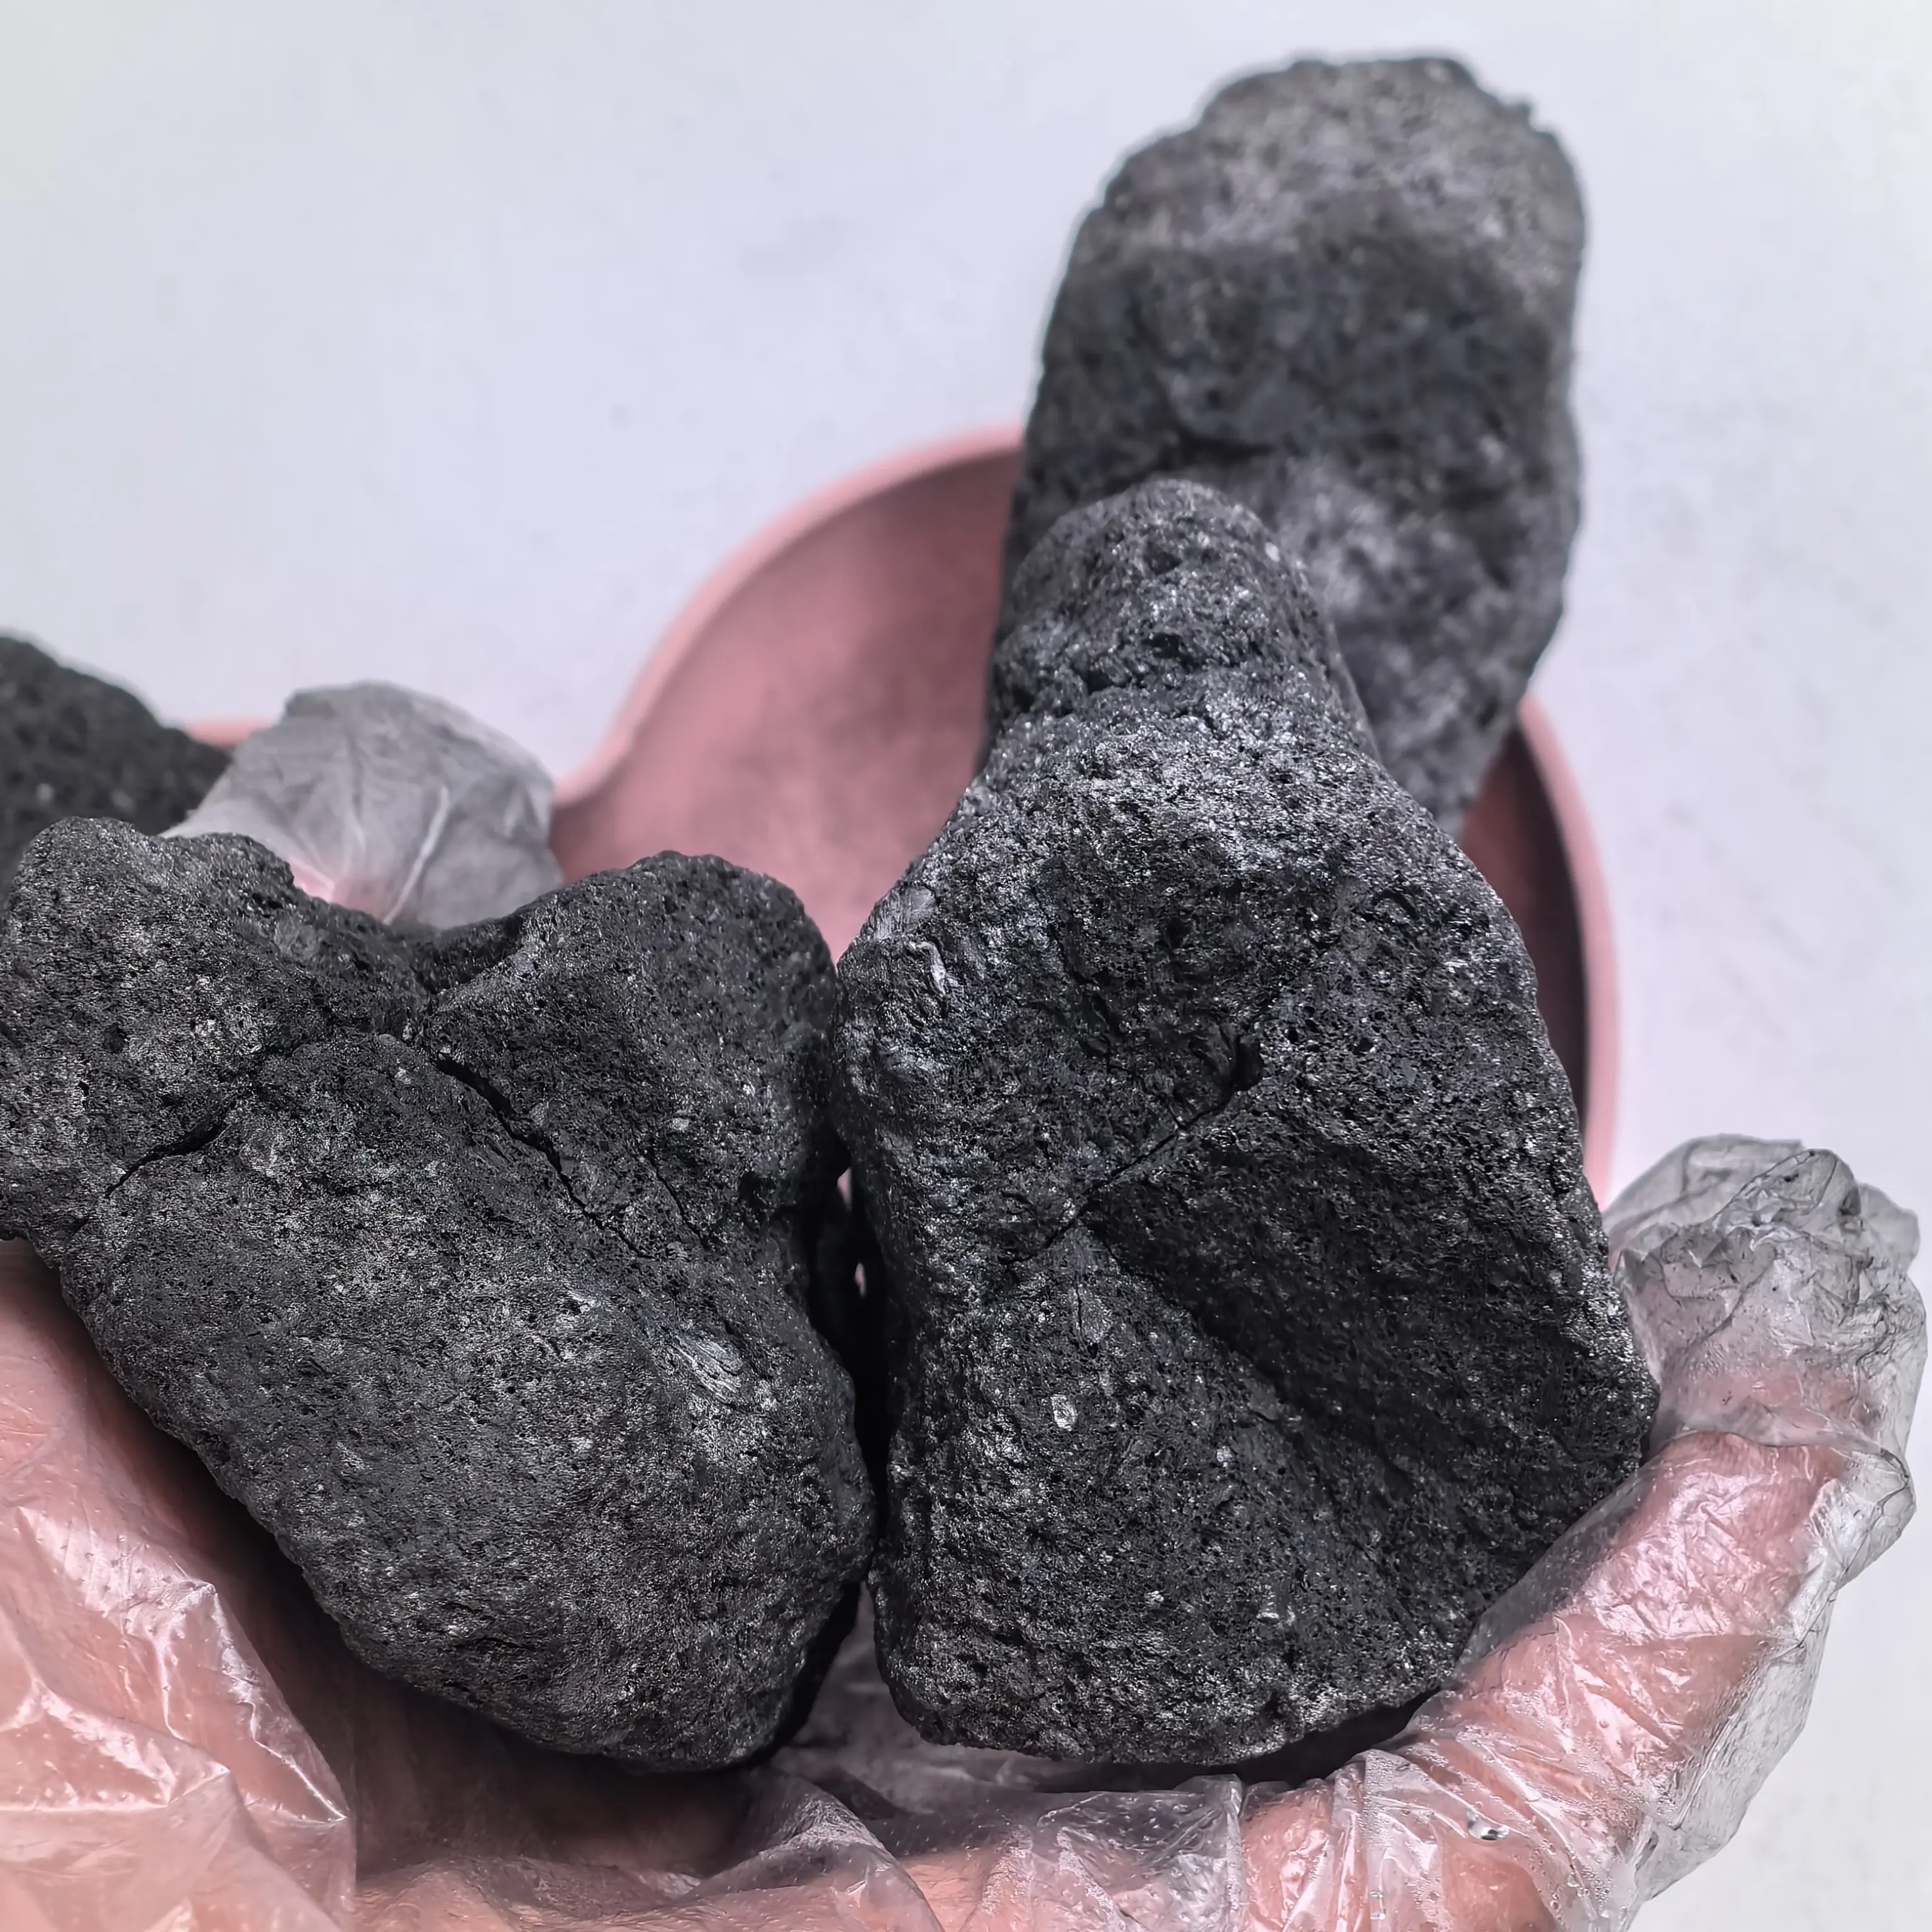 Patent ürünleri yüksek sabit karbon sert kömür kalsine yakıt metalurjik kok kömür